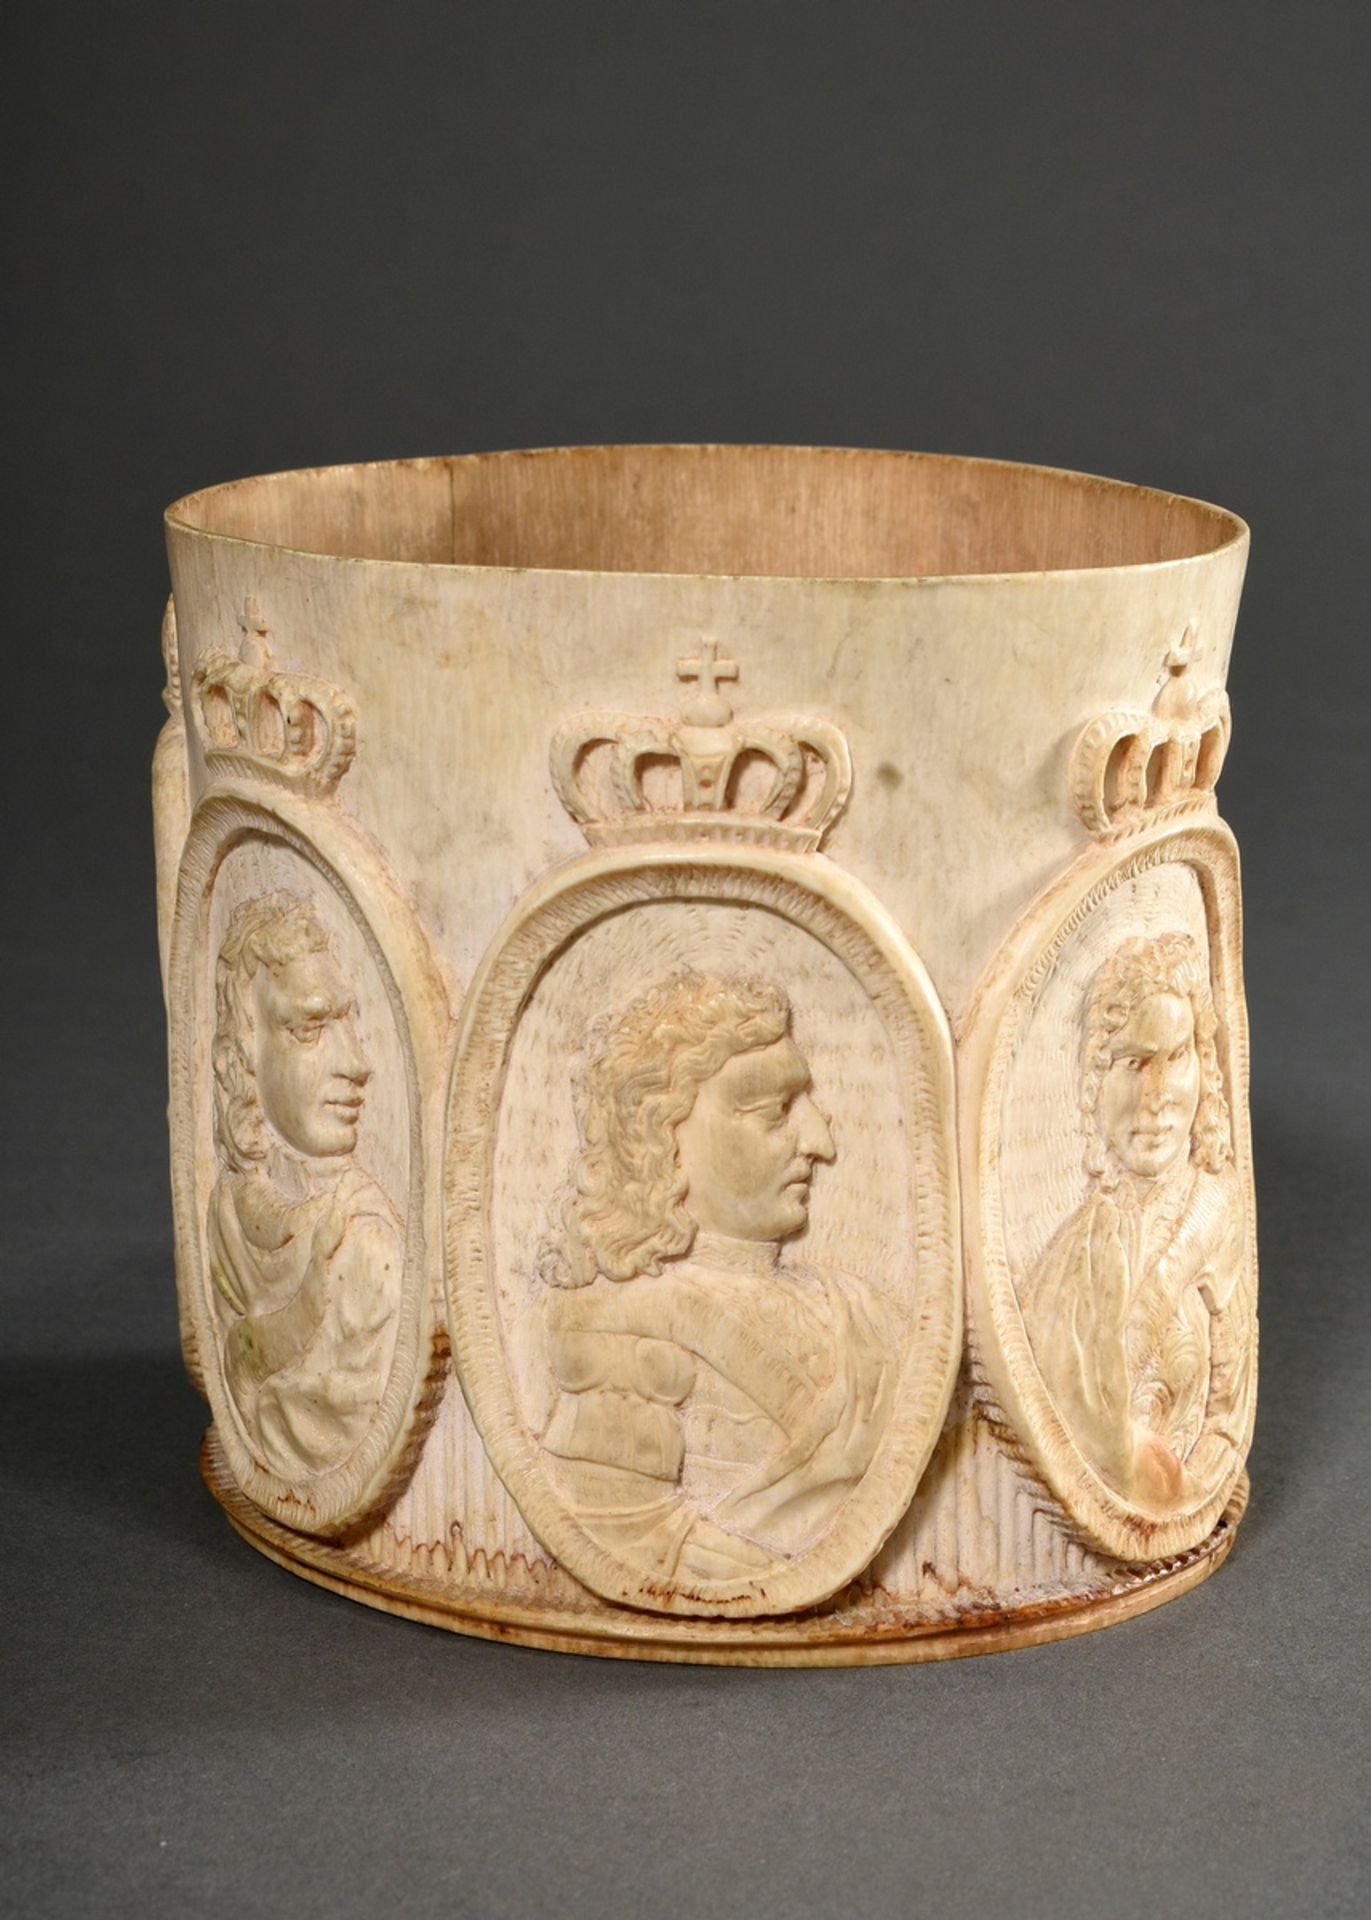 Elfenbein Wandung oder Mantel eines Kurfürsten Humpens mit 7 Herrscherportraits in ovalen Reliefkar